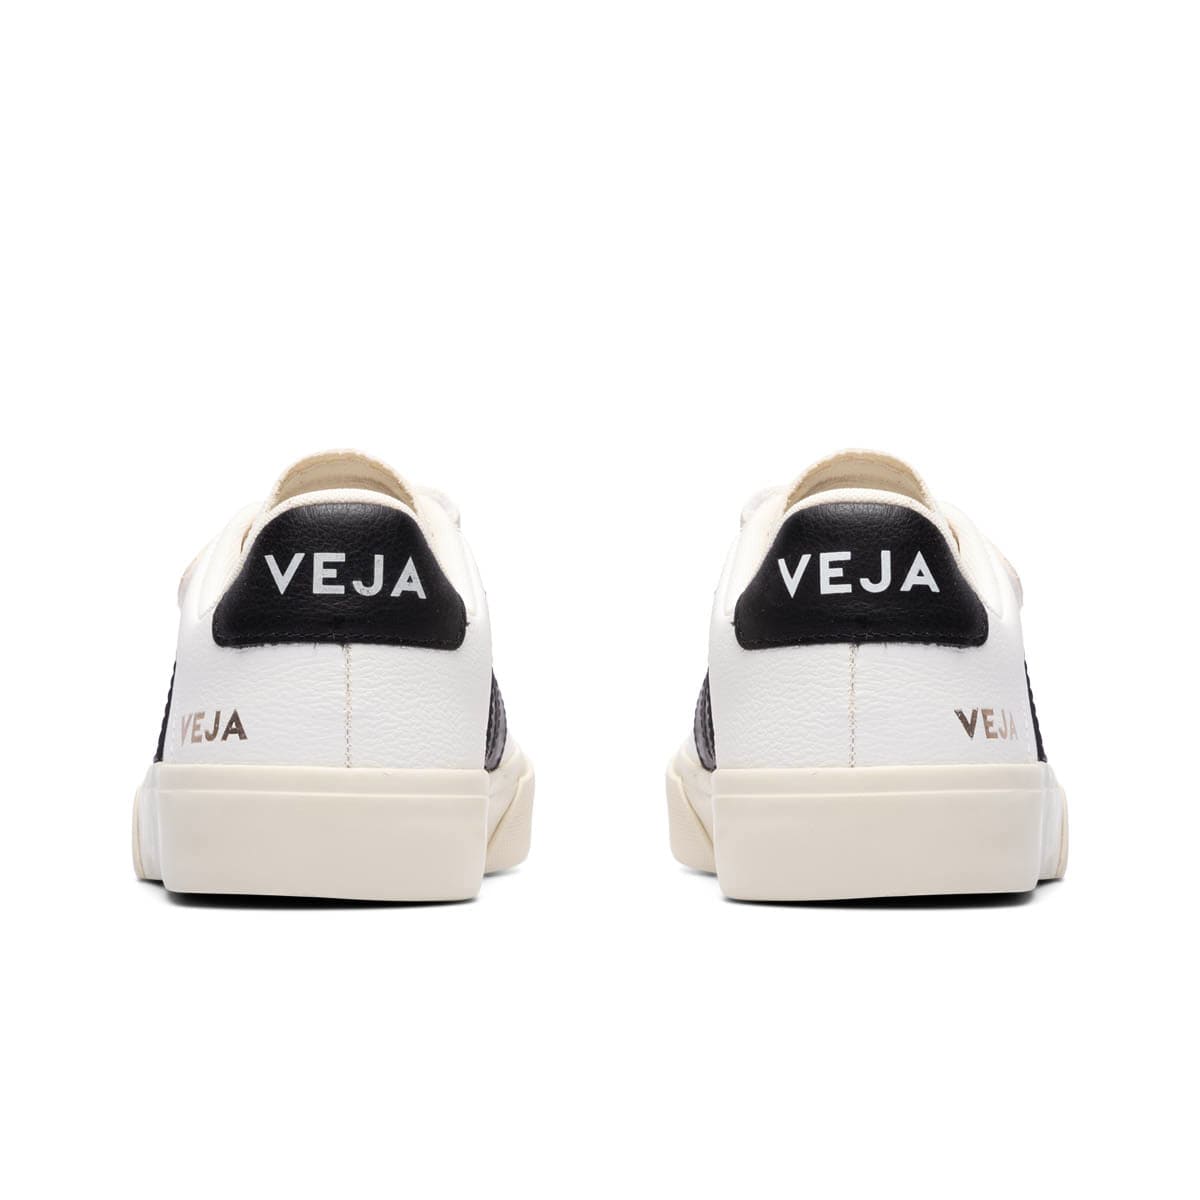 Veja Recife Sneaker in Extra White & Marsala, Burgundy. Size 35 (also in 42).